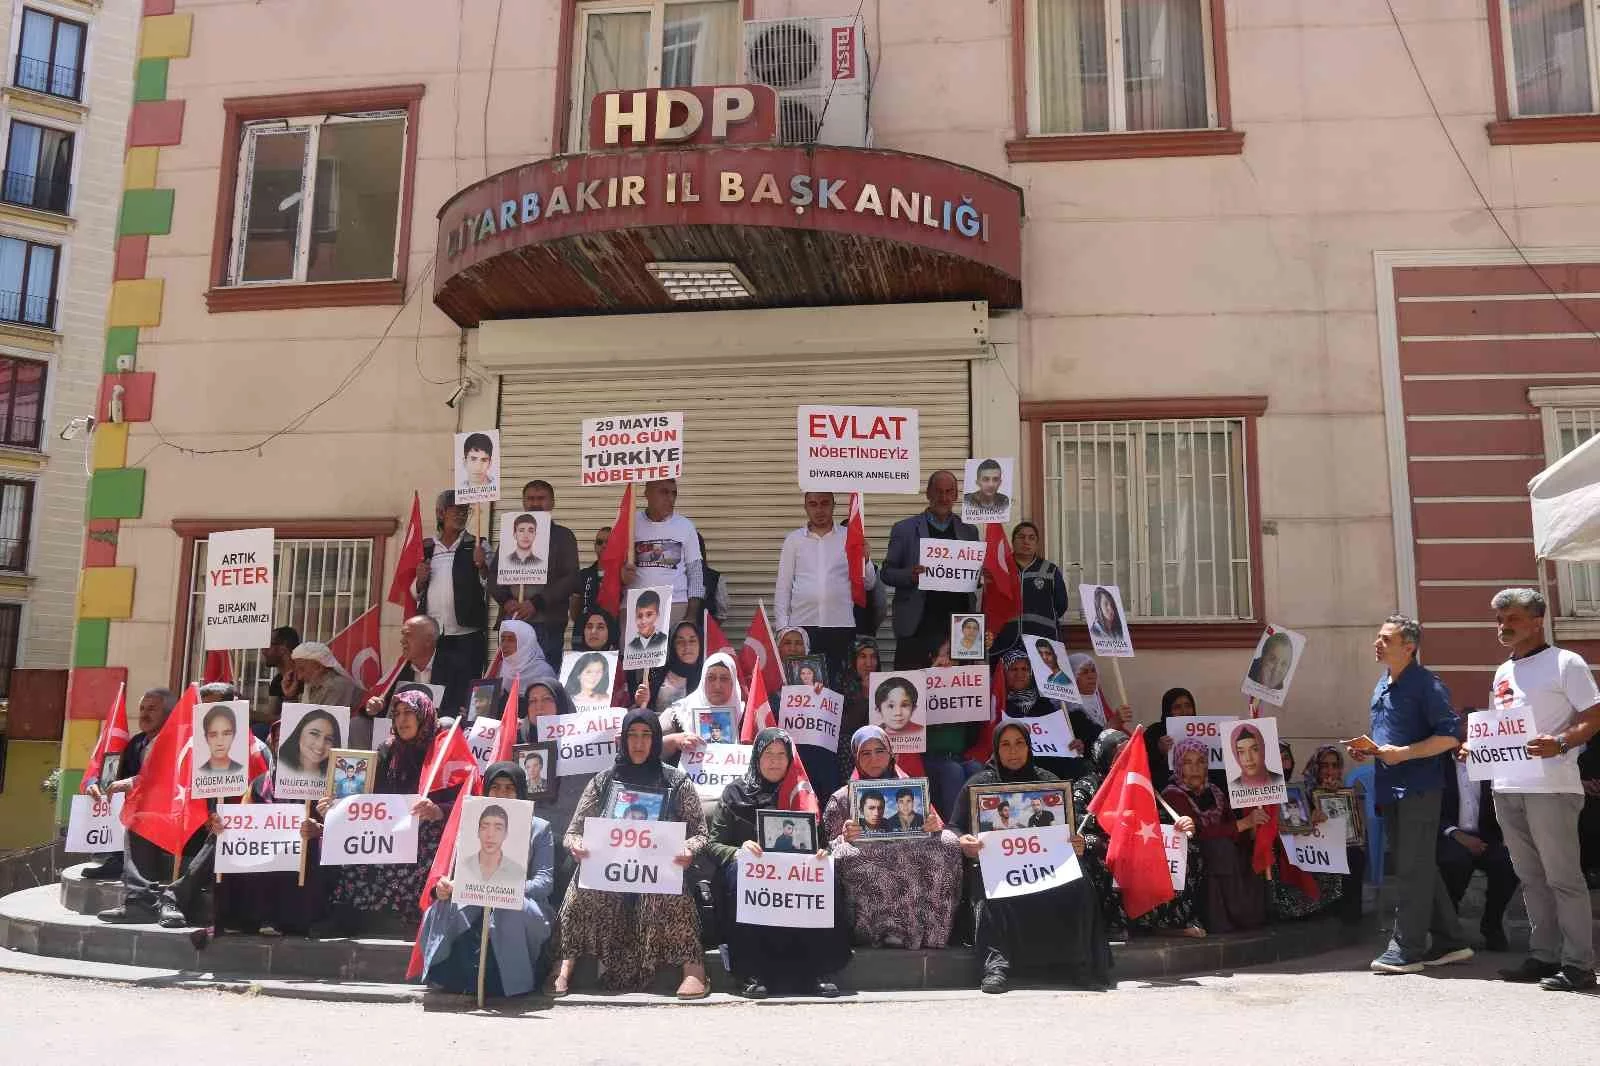 Diyarbakır ailelerinin HDP ve PKKya karşı destansı direnişi 1000inci gününde